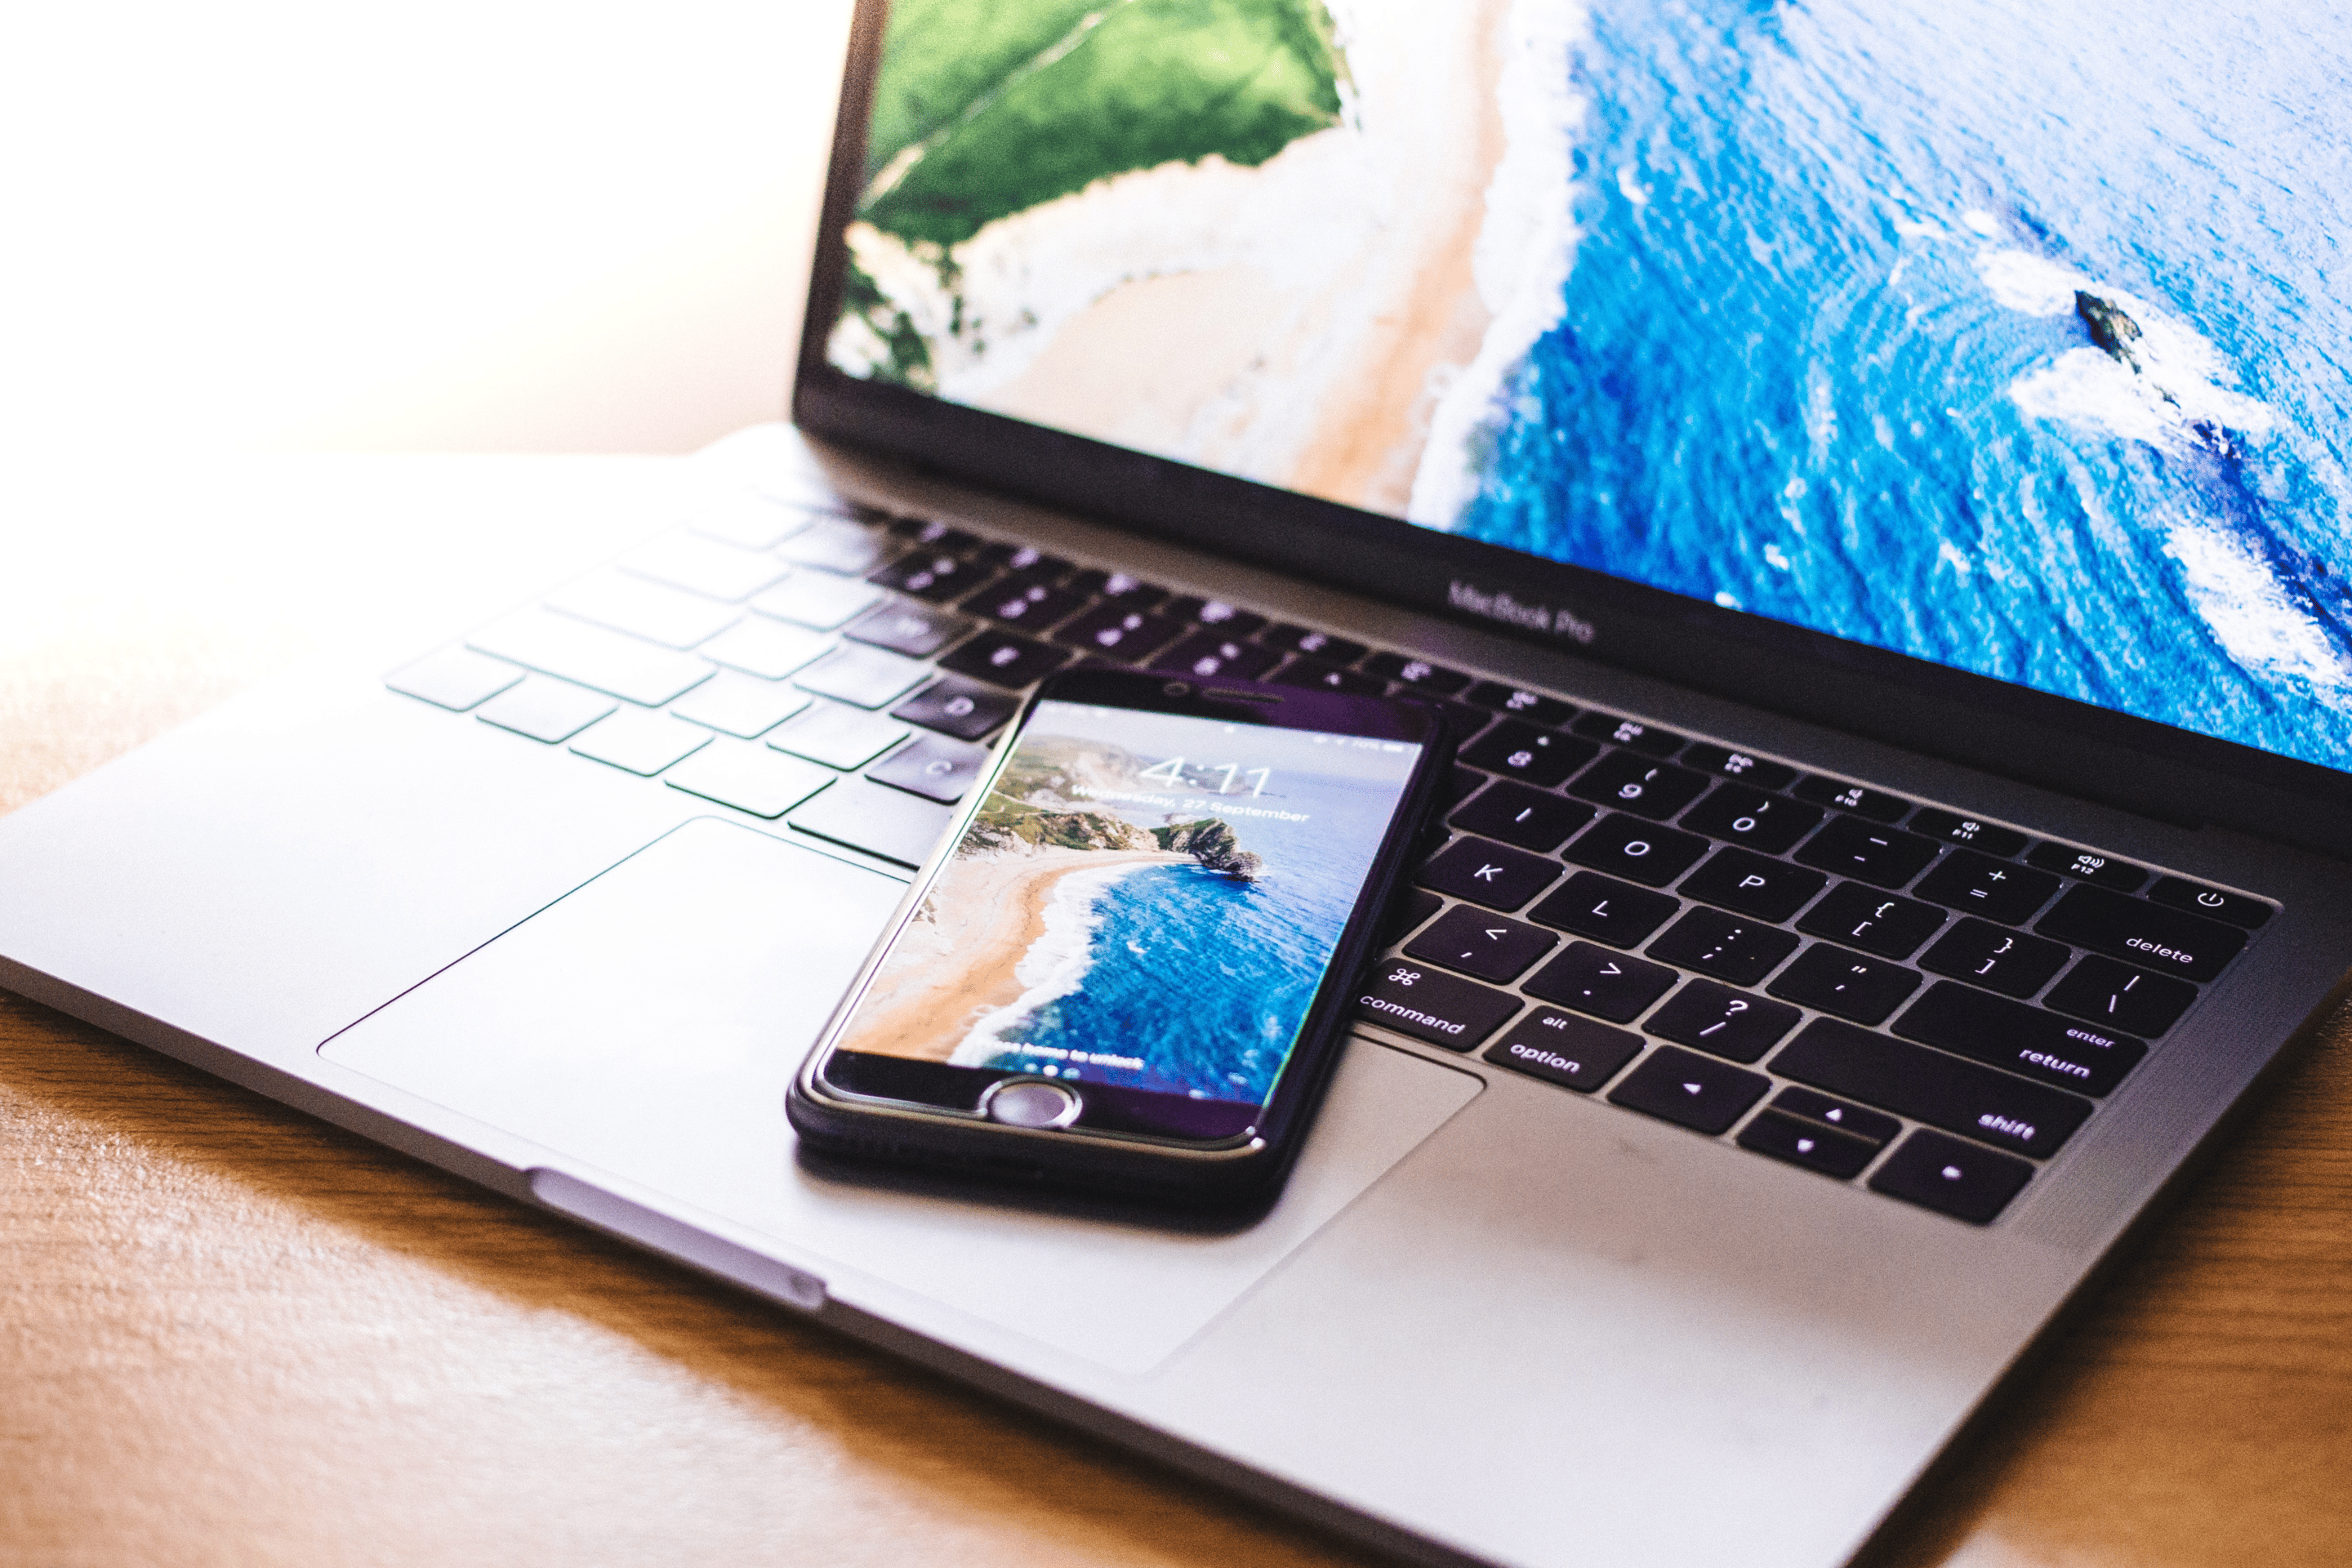 ordinateur et téléphone portable avec photos de plage en fond d'écran